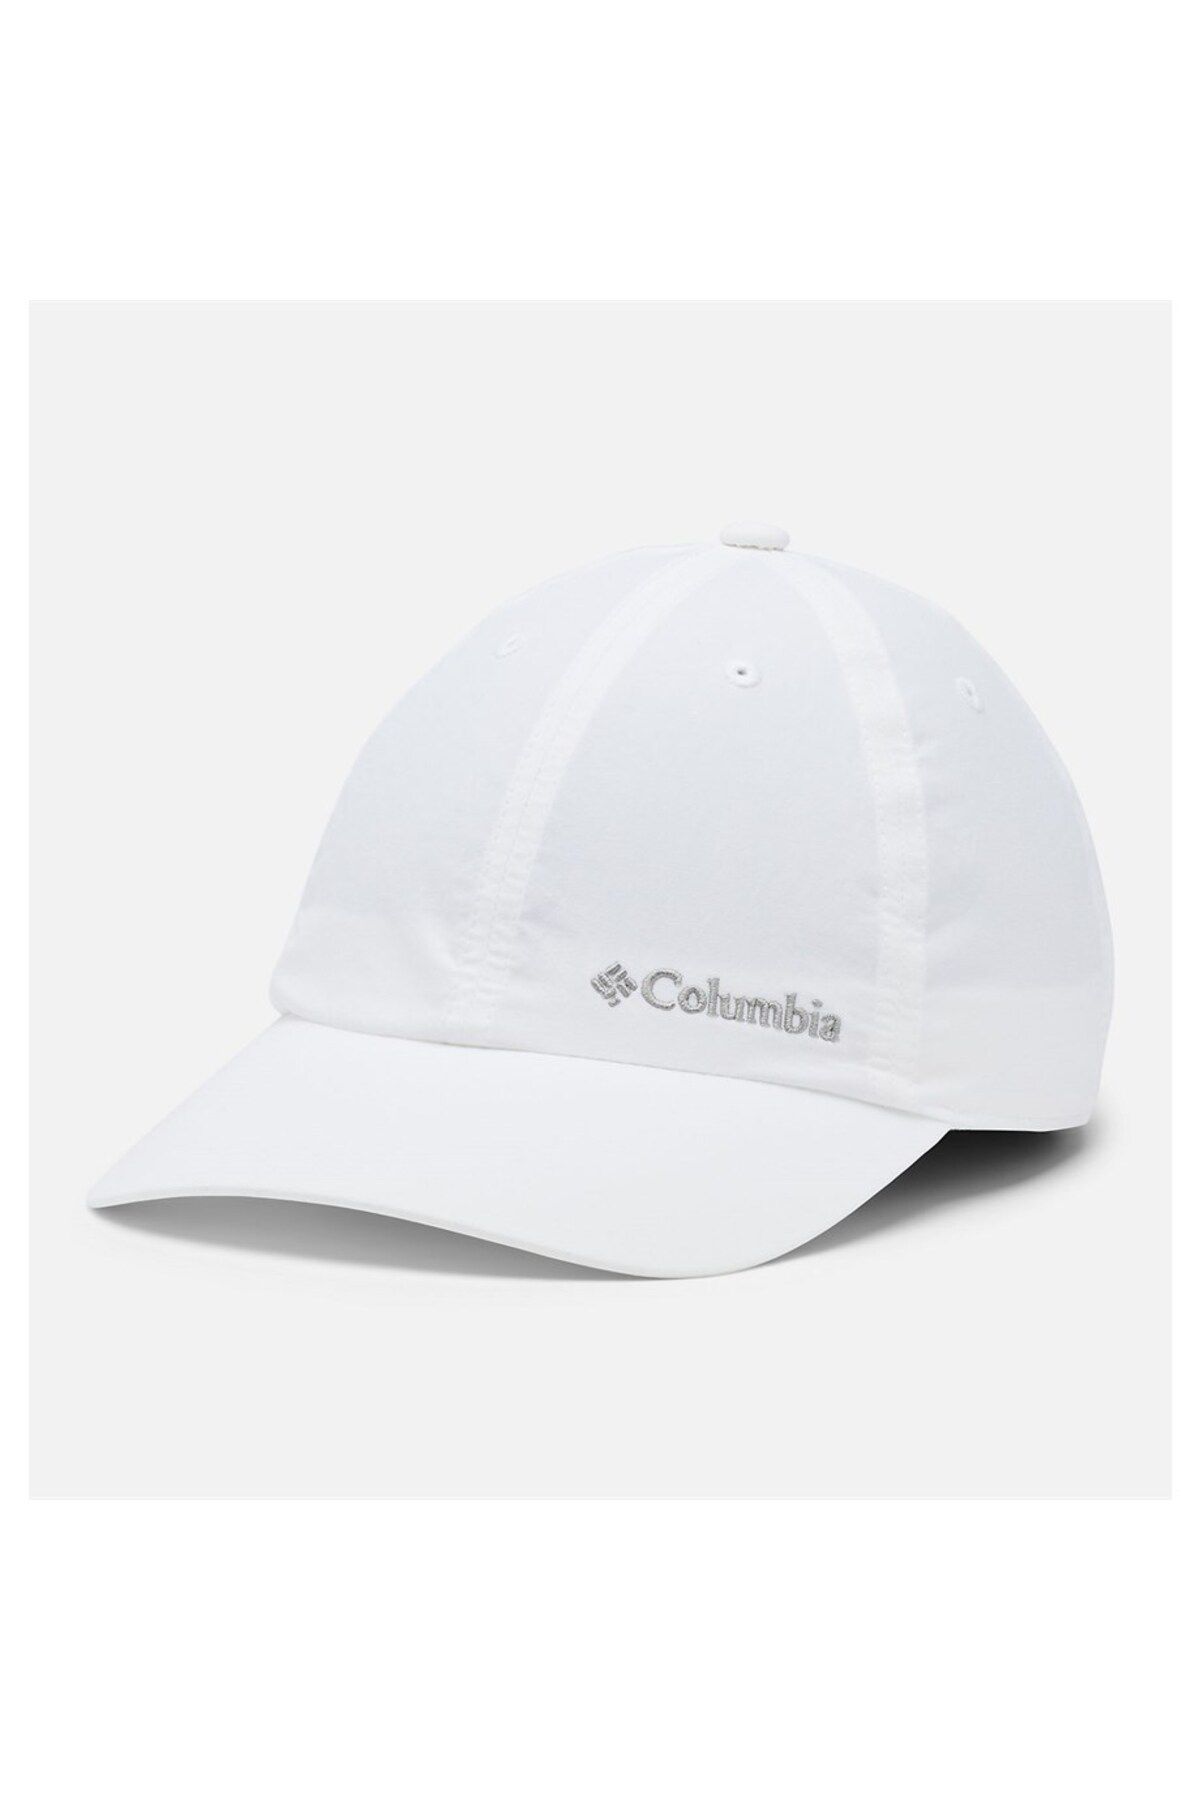 Columbia Tech Shade II Cap Unisex Hat Xu0155